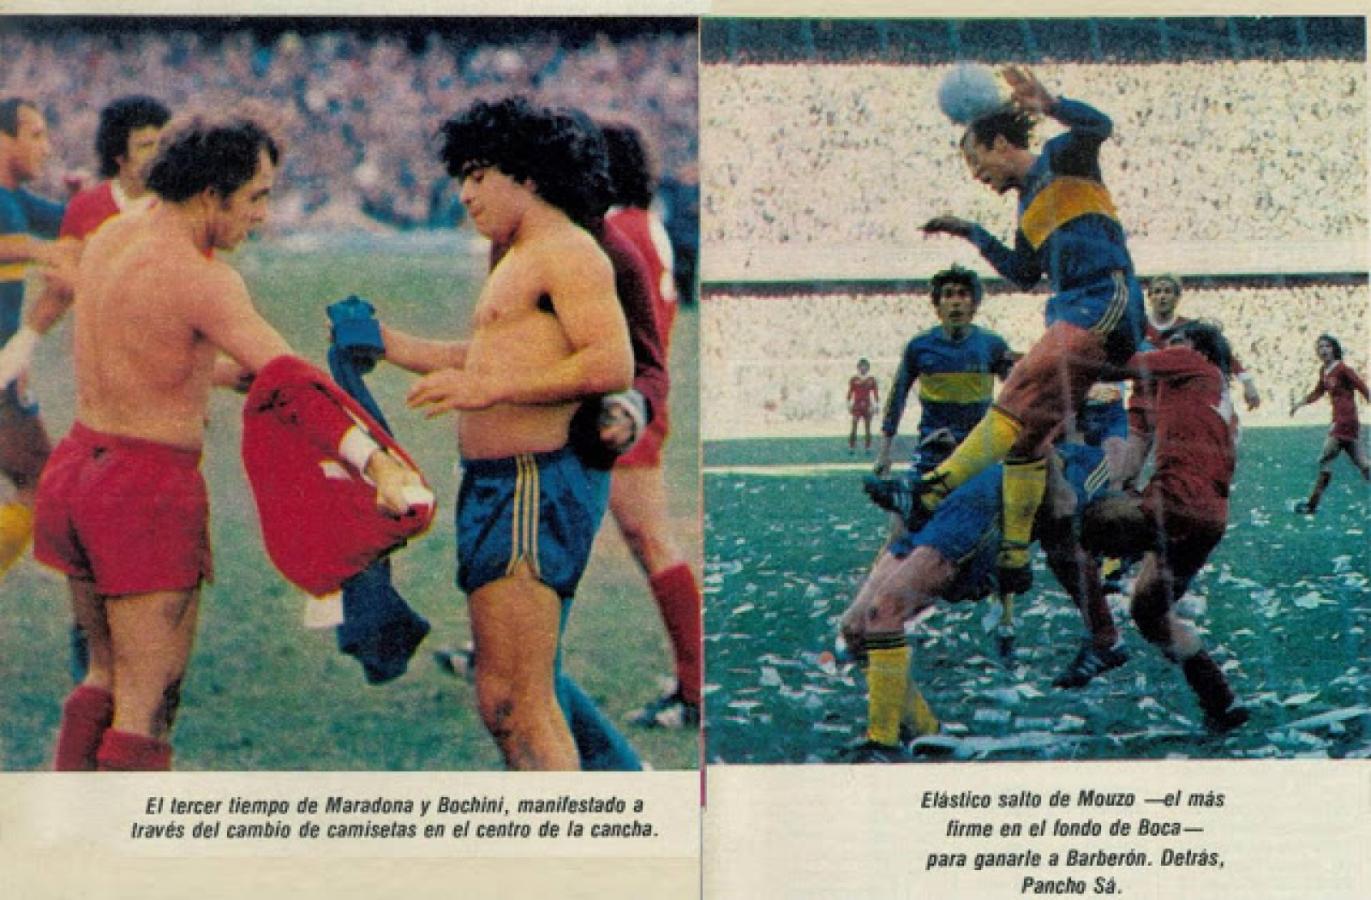 Imagen El Gráfico retrató el intercambio de camisetas entre Maradona y Bochini